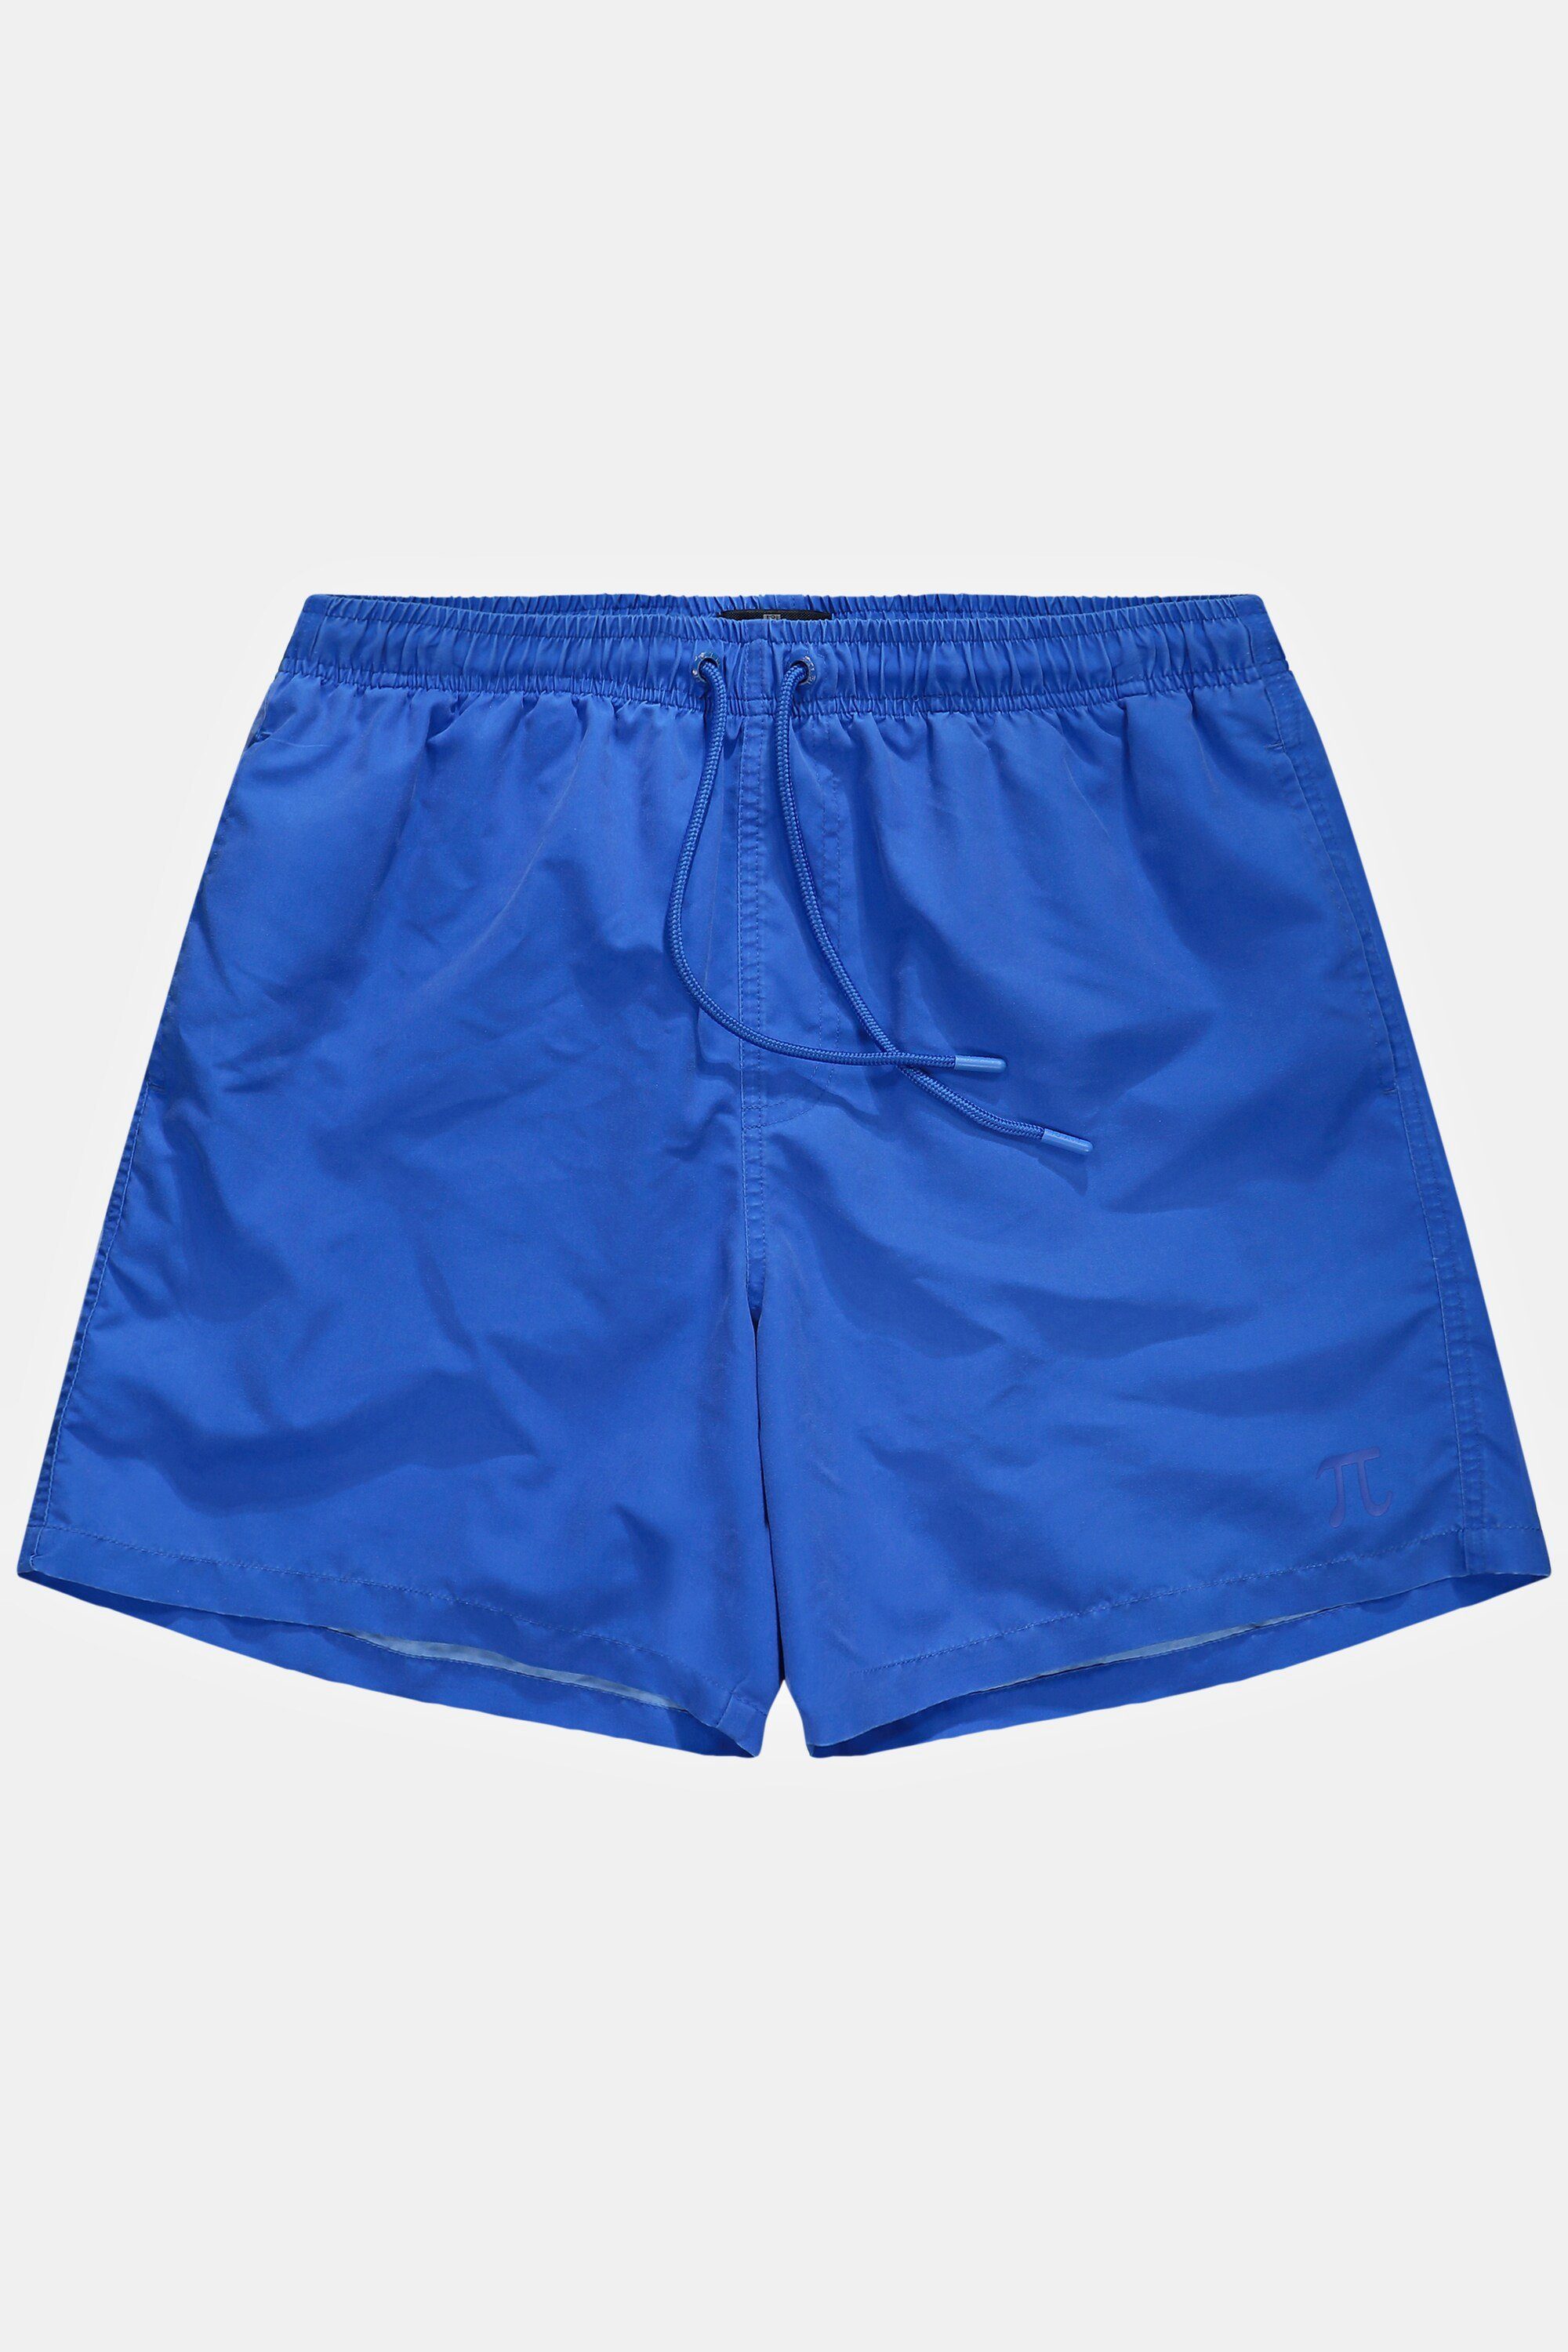 Badehose JP1880 blau Elastikbund Beachwear Badeshorts